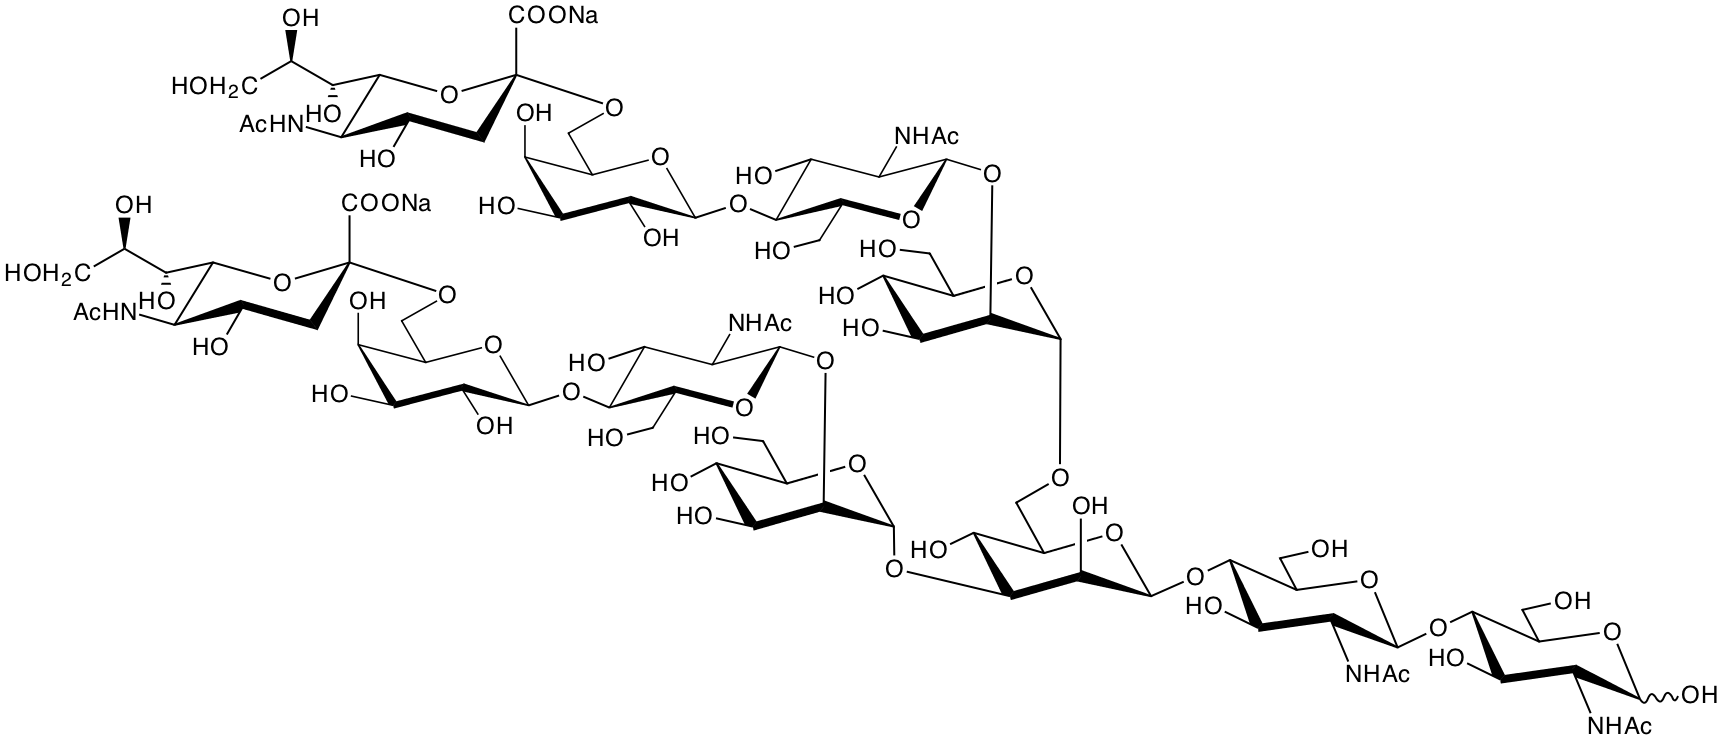 structure of NeuNAcalpha2,6Galbeta1,4GlcNAcbeta1,2Manalpha1,3(NeuNAcalpha2,6Galbeta1,4GlcNAcbeta1,2Manalpha1,6)Manbeta1,4GlcNAcbeta1,4GlcNAc disodium salt